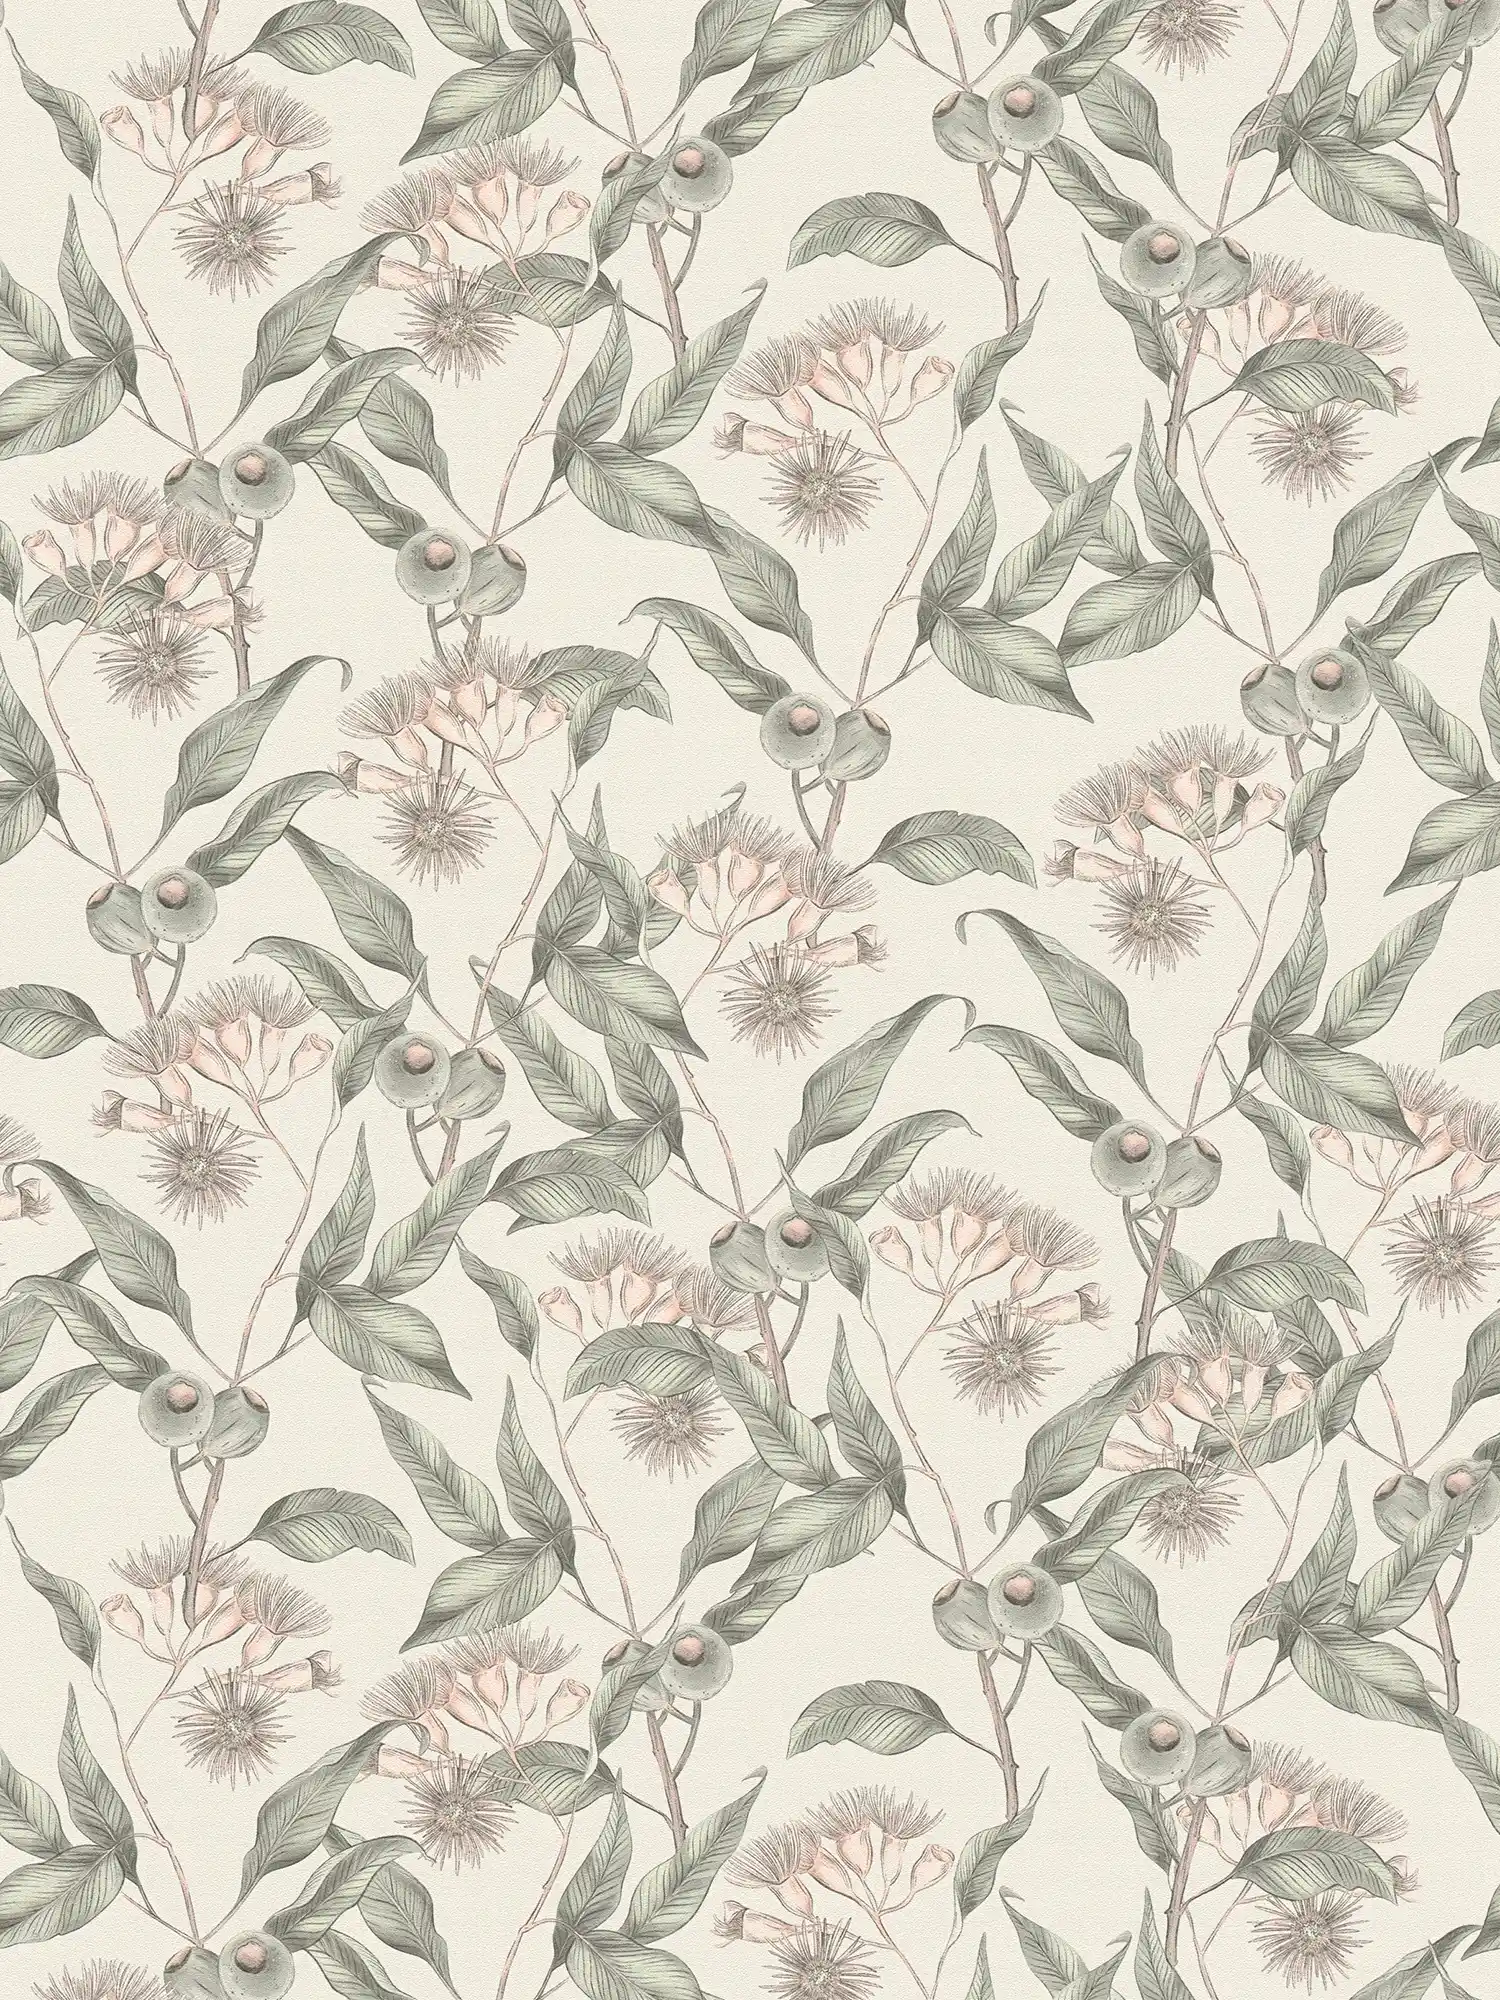 Tapete floral mit Blättern & Blüten modern strukturiert matt – Weiß, Grau, Grün
